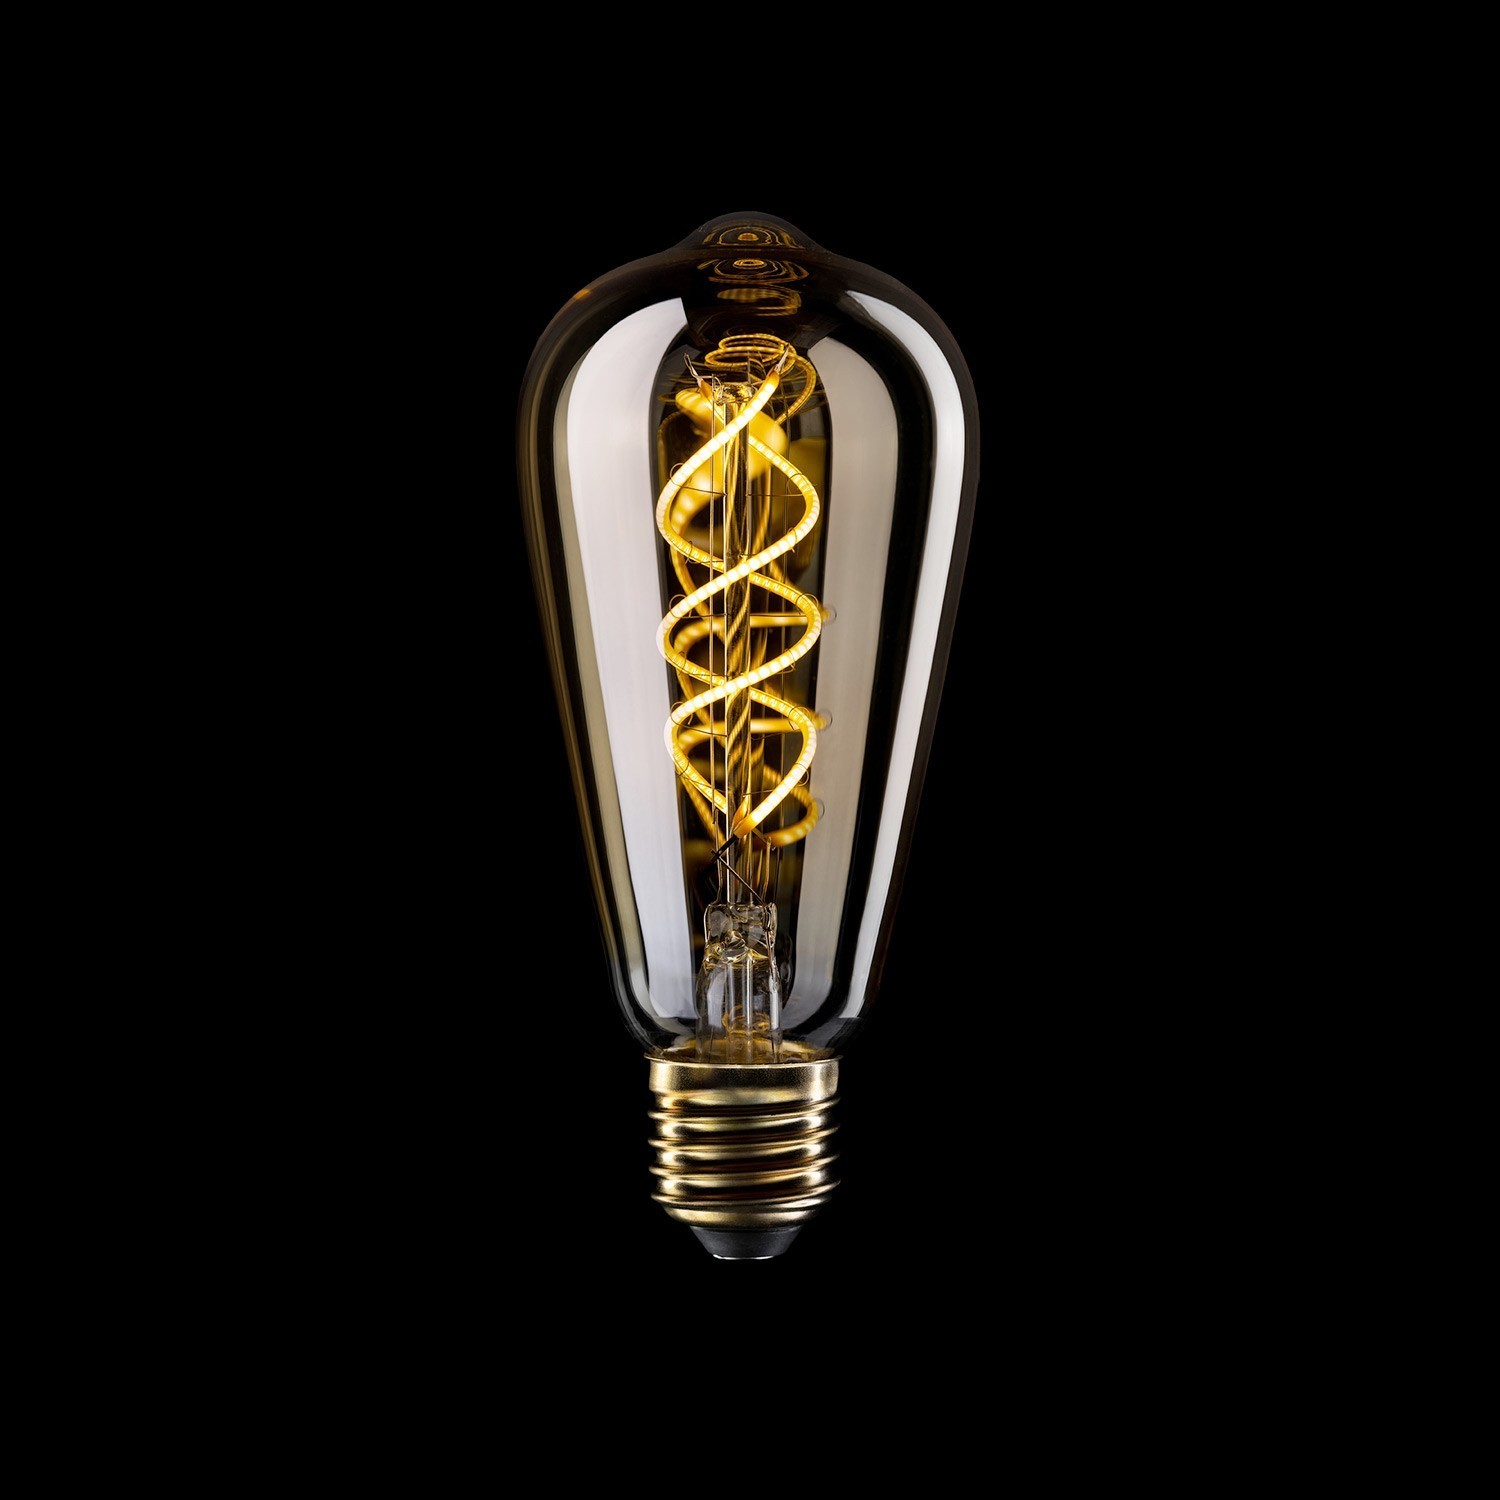 Ampoule LED Dorée B01 Ligne 5V Filament à spirale Edison ST64 1,3W 80Lm E27 2500K Dimmable